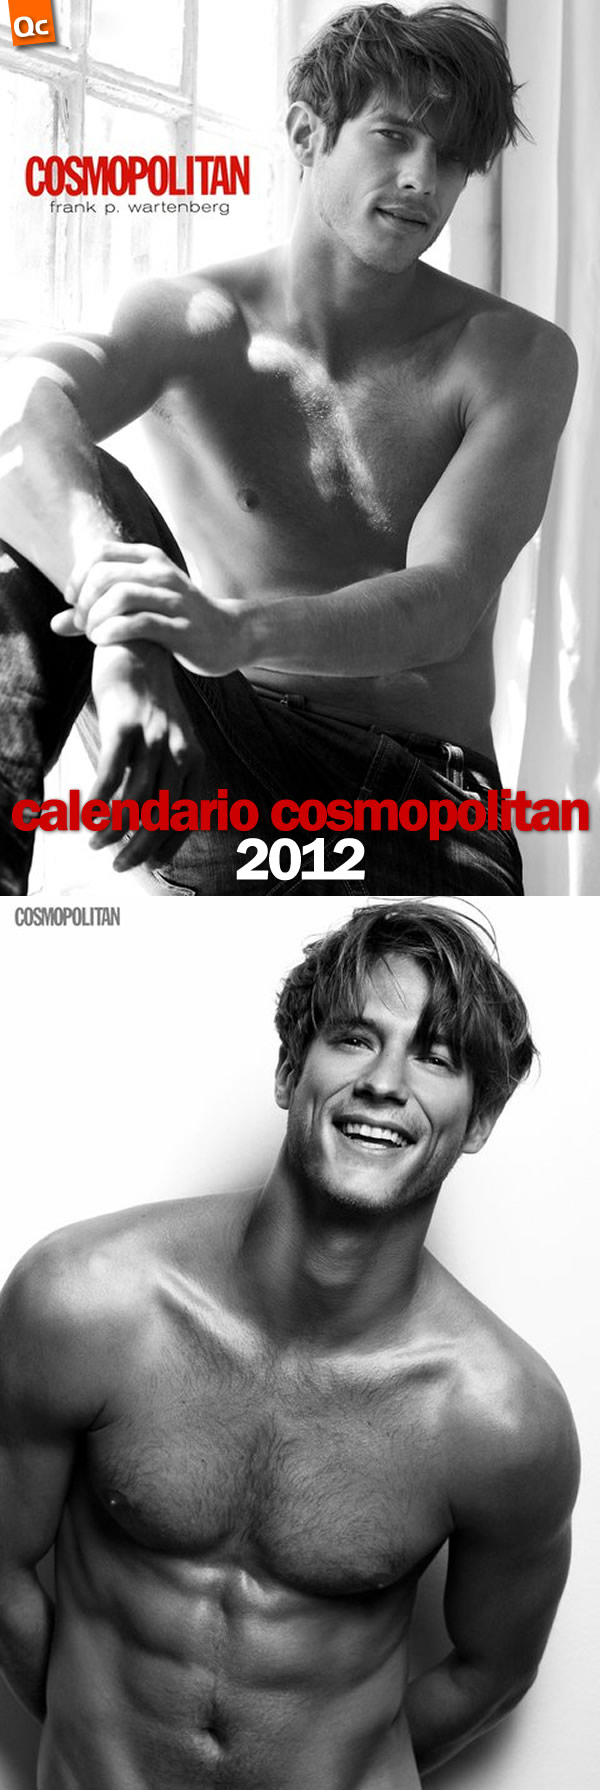 Calendario Cosmopolitan 2012